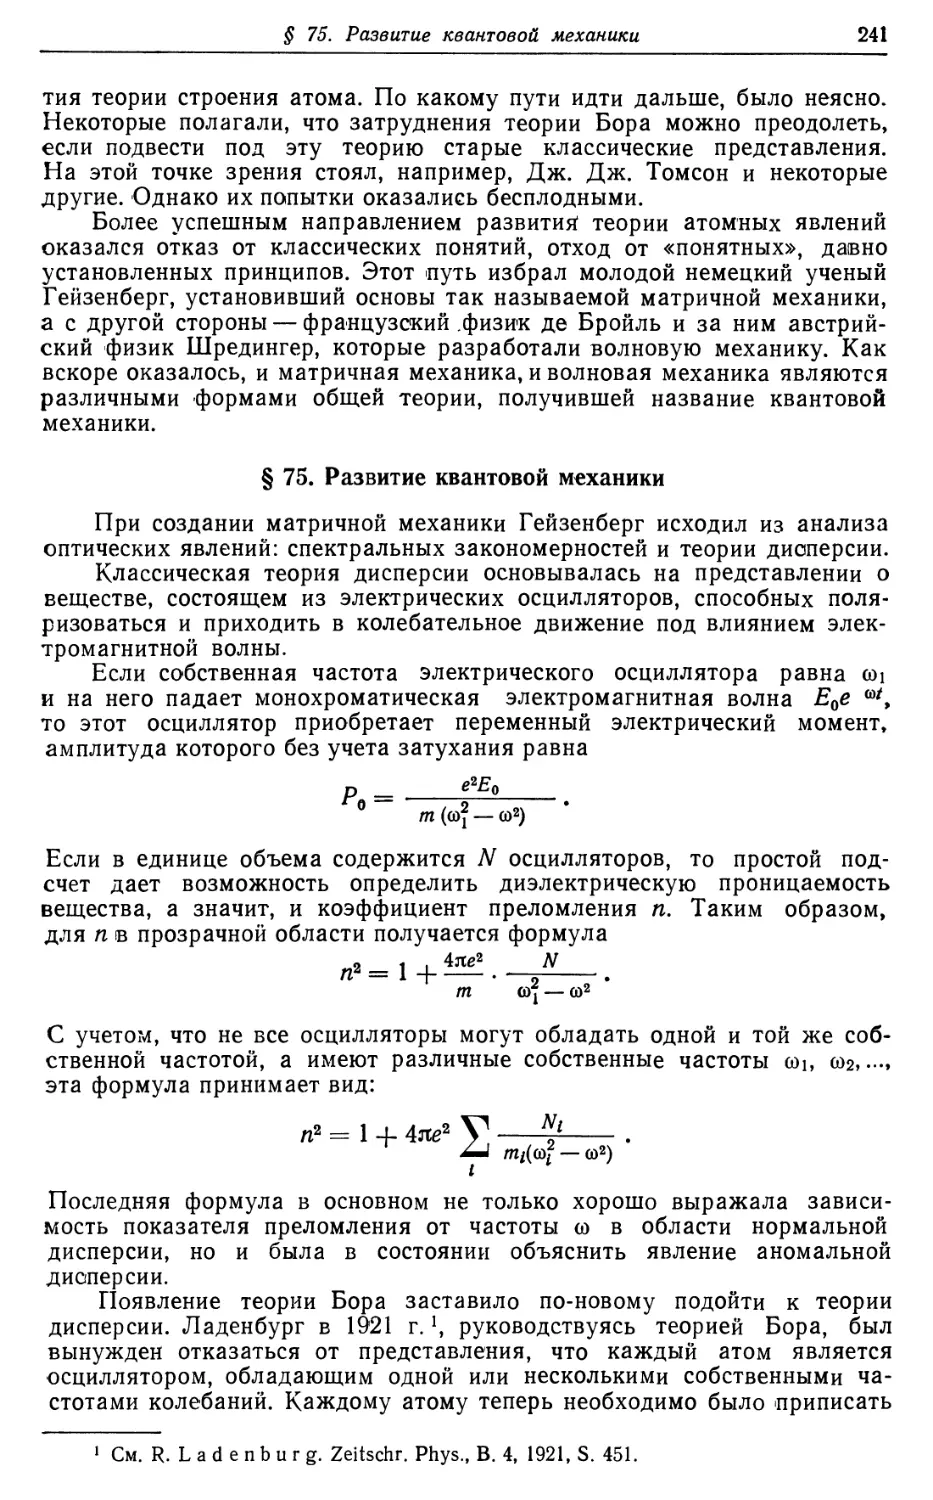 § 75. Развитие квантовой механики